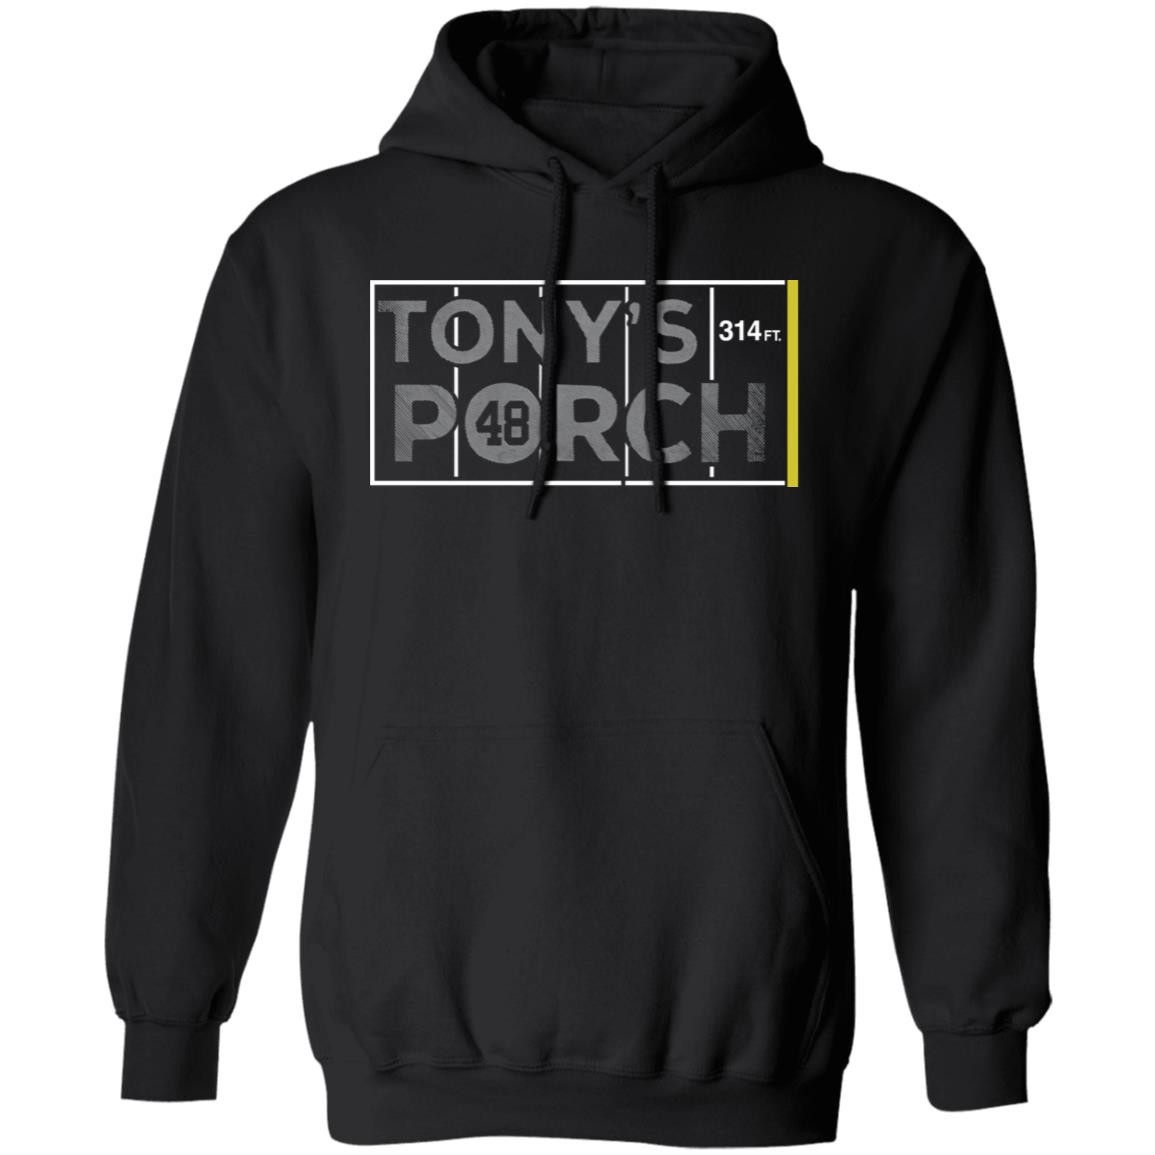 Tony’s Porch 314 Ft Shirt 2